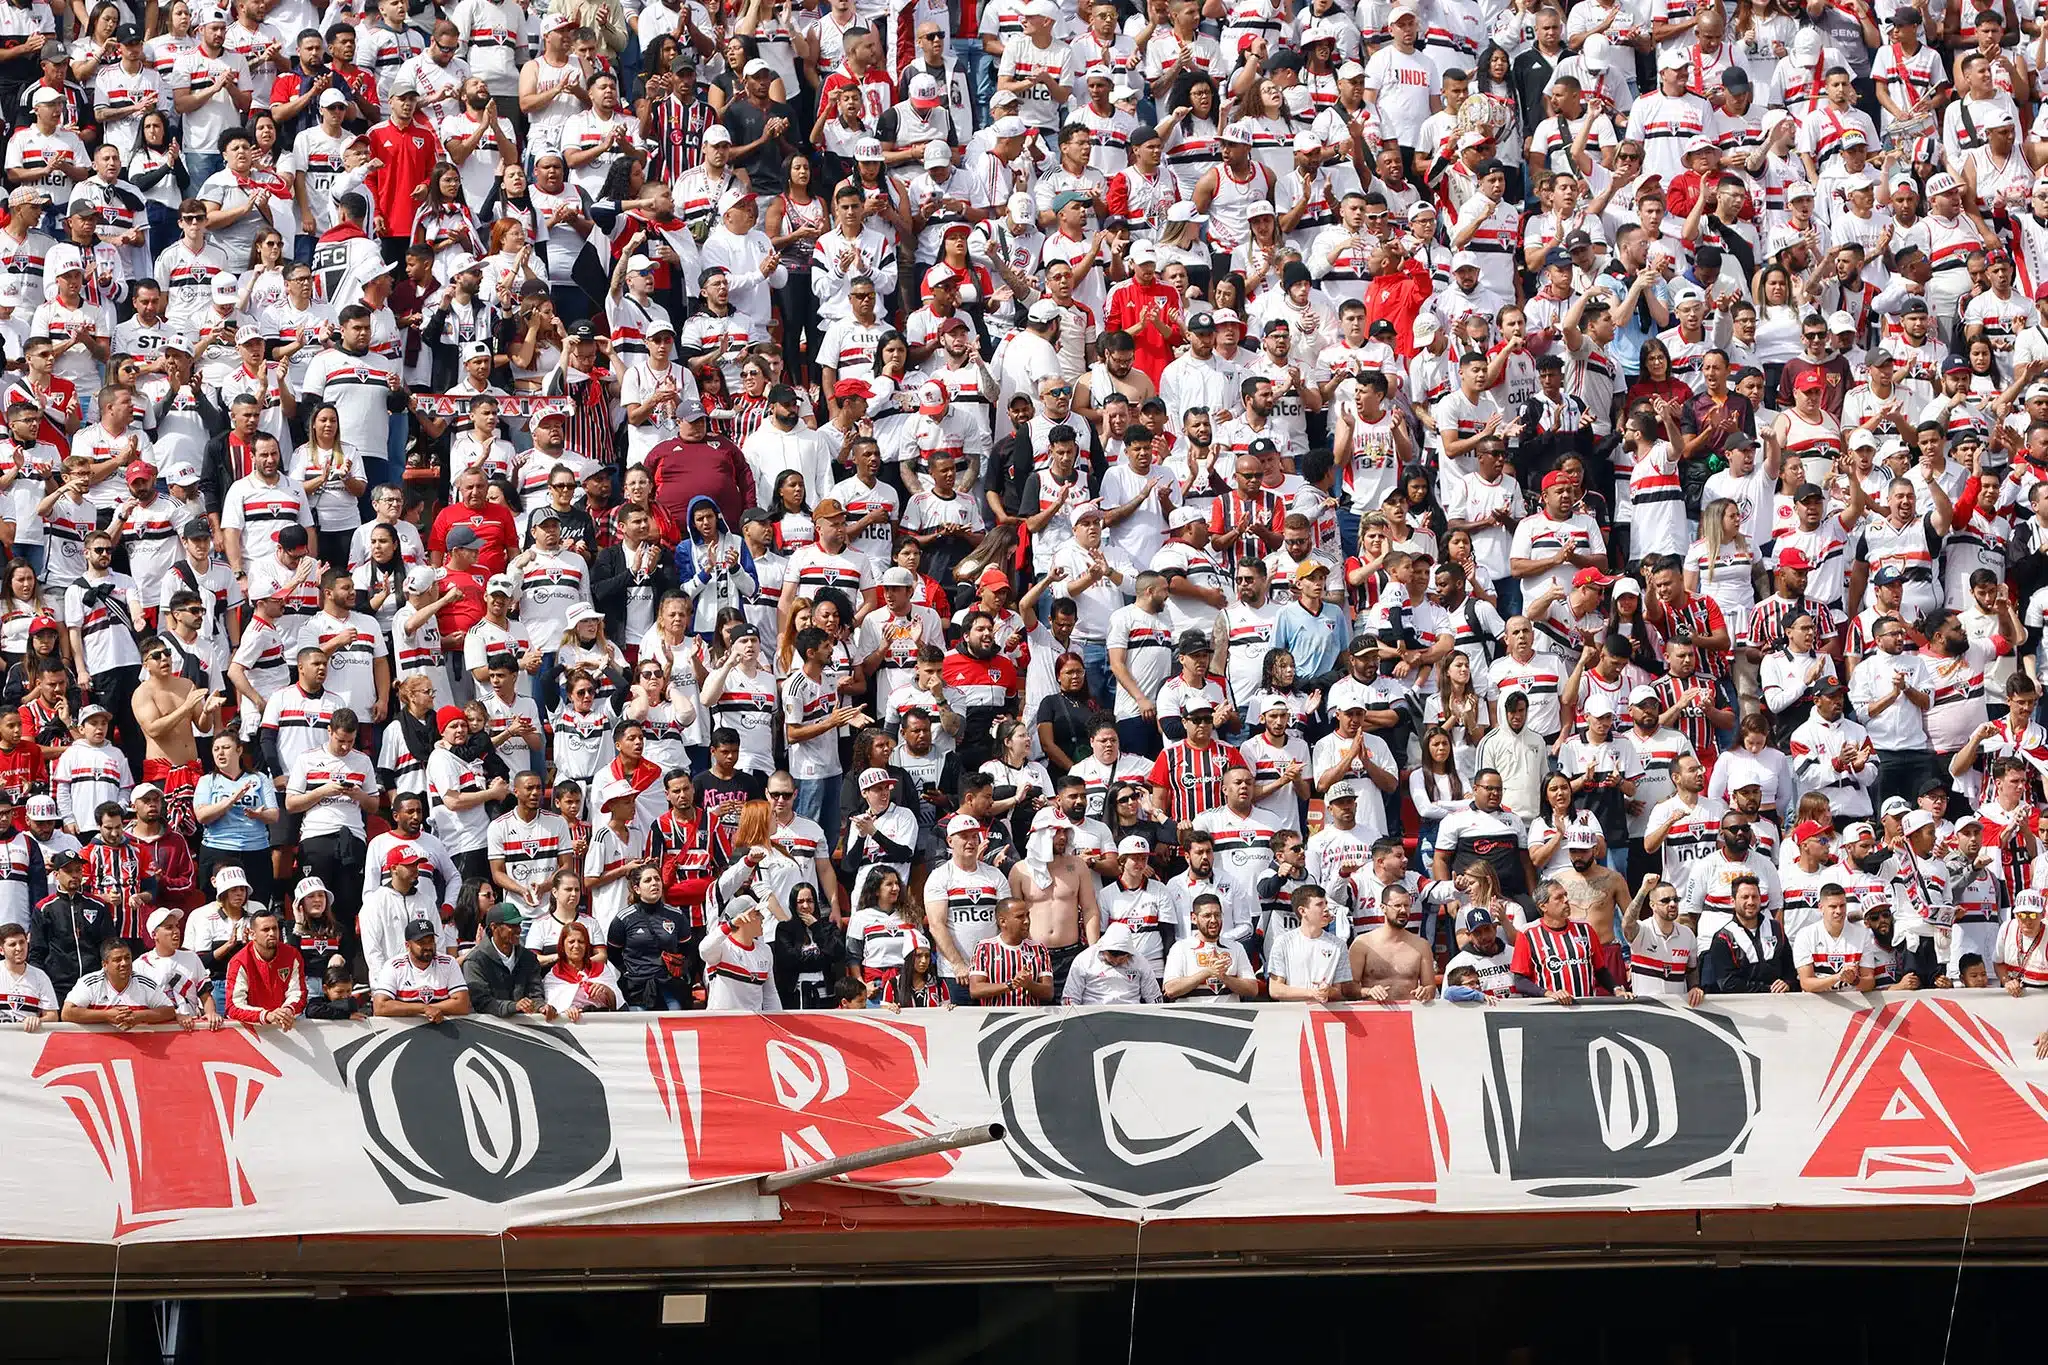 São Paulo divulga parcial de ingressos vendida para jogo contra o Atlético-MG